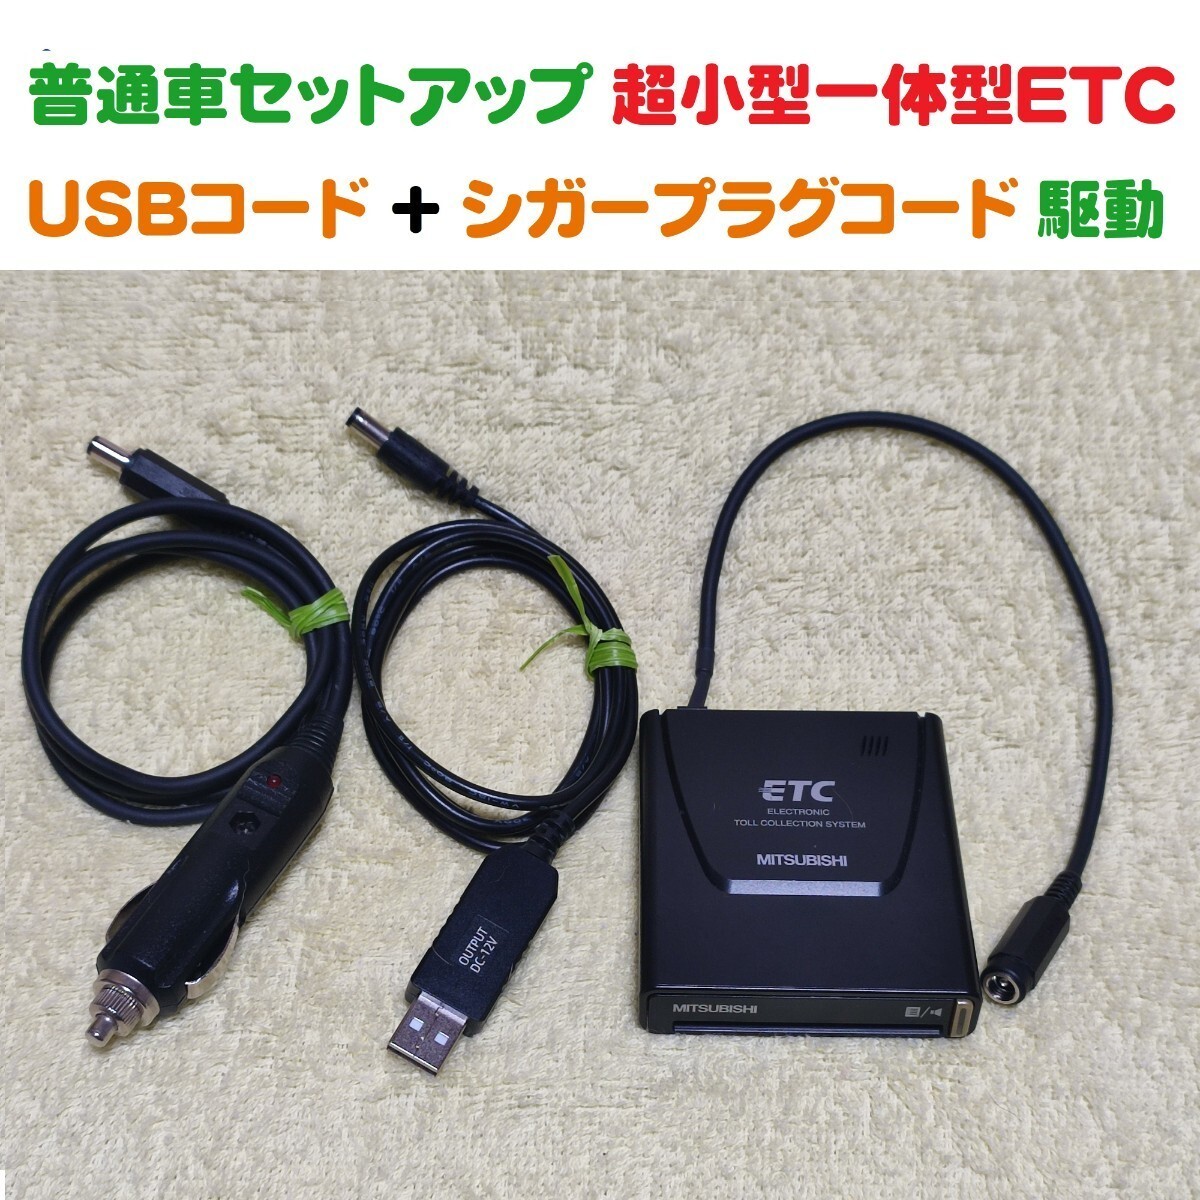 普通自動車セットアップ 超小型一体型ETC車載機 三菱EP-9U5*V（シンプルで故障が少ない） USB昇圧コード + シガープラグコード 二電源の画像1